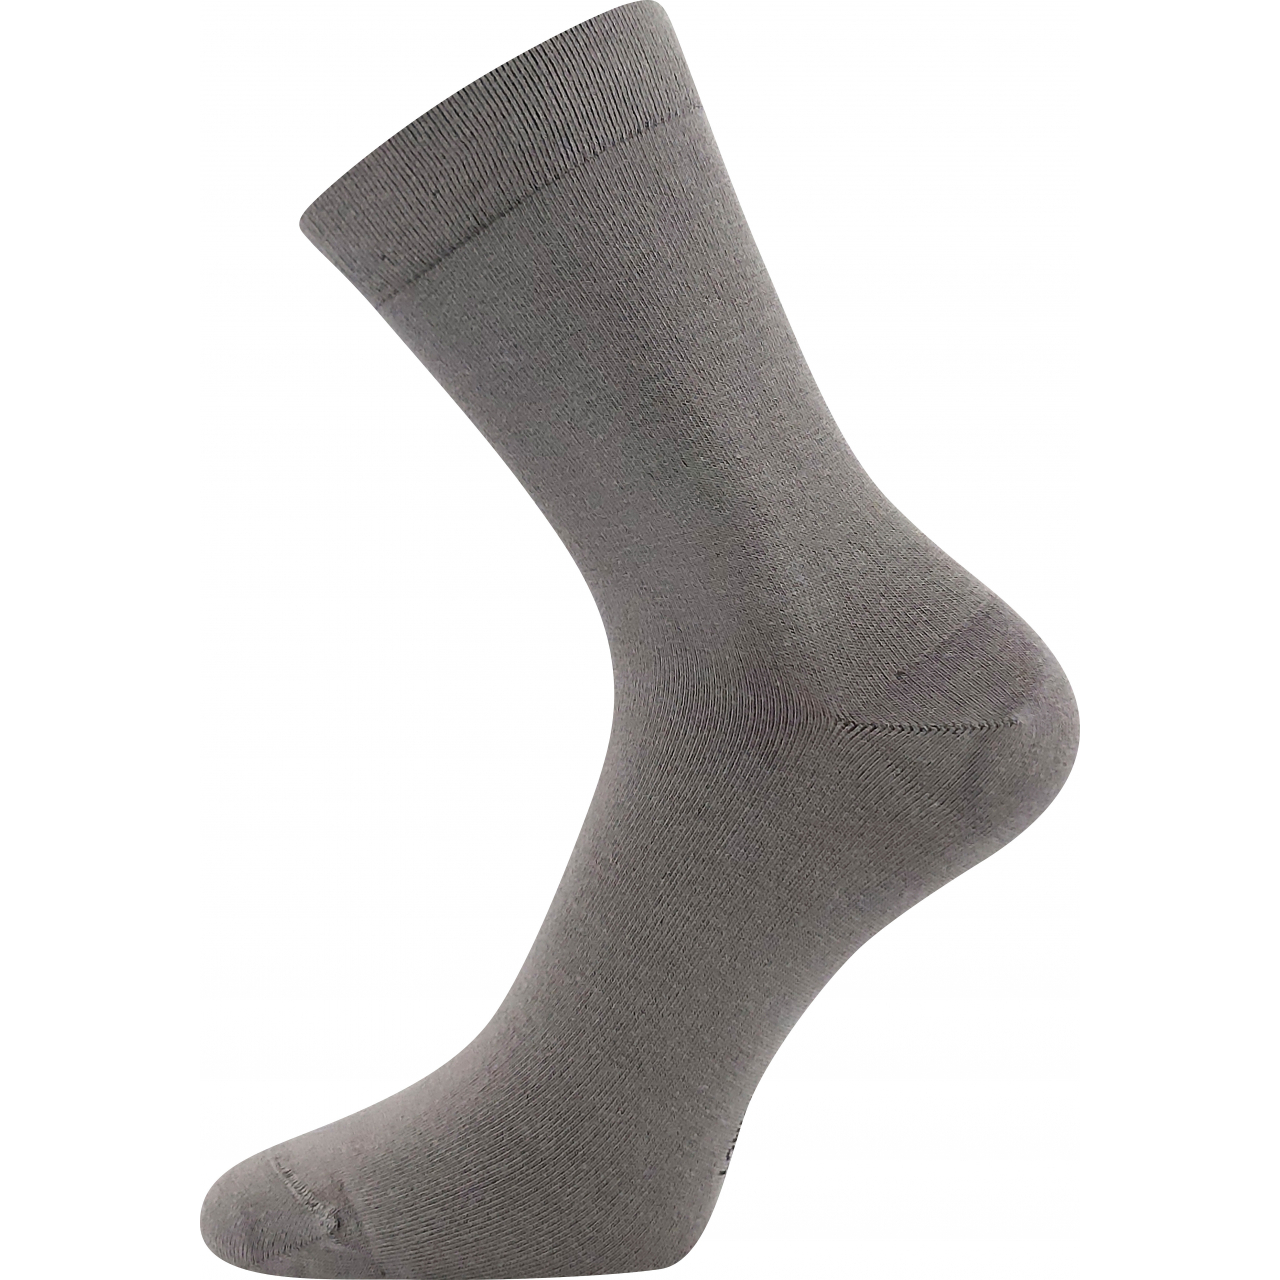 Ponožky unisex zdravotní Lonka Drbambik - šedé, 43-46